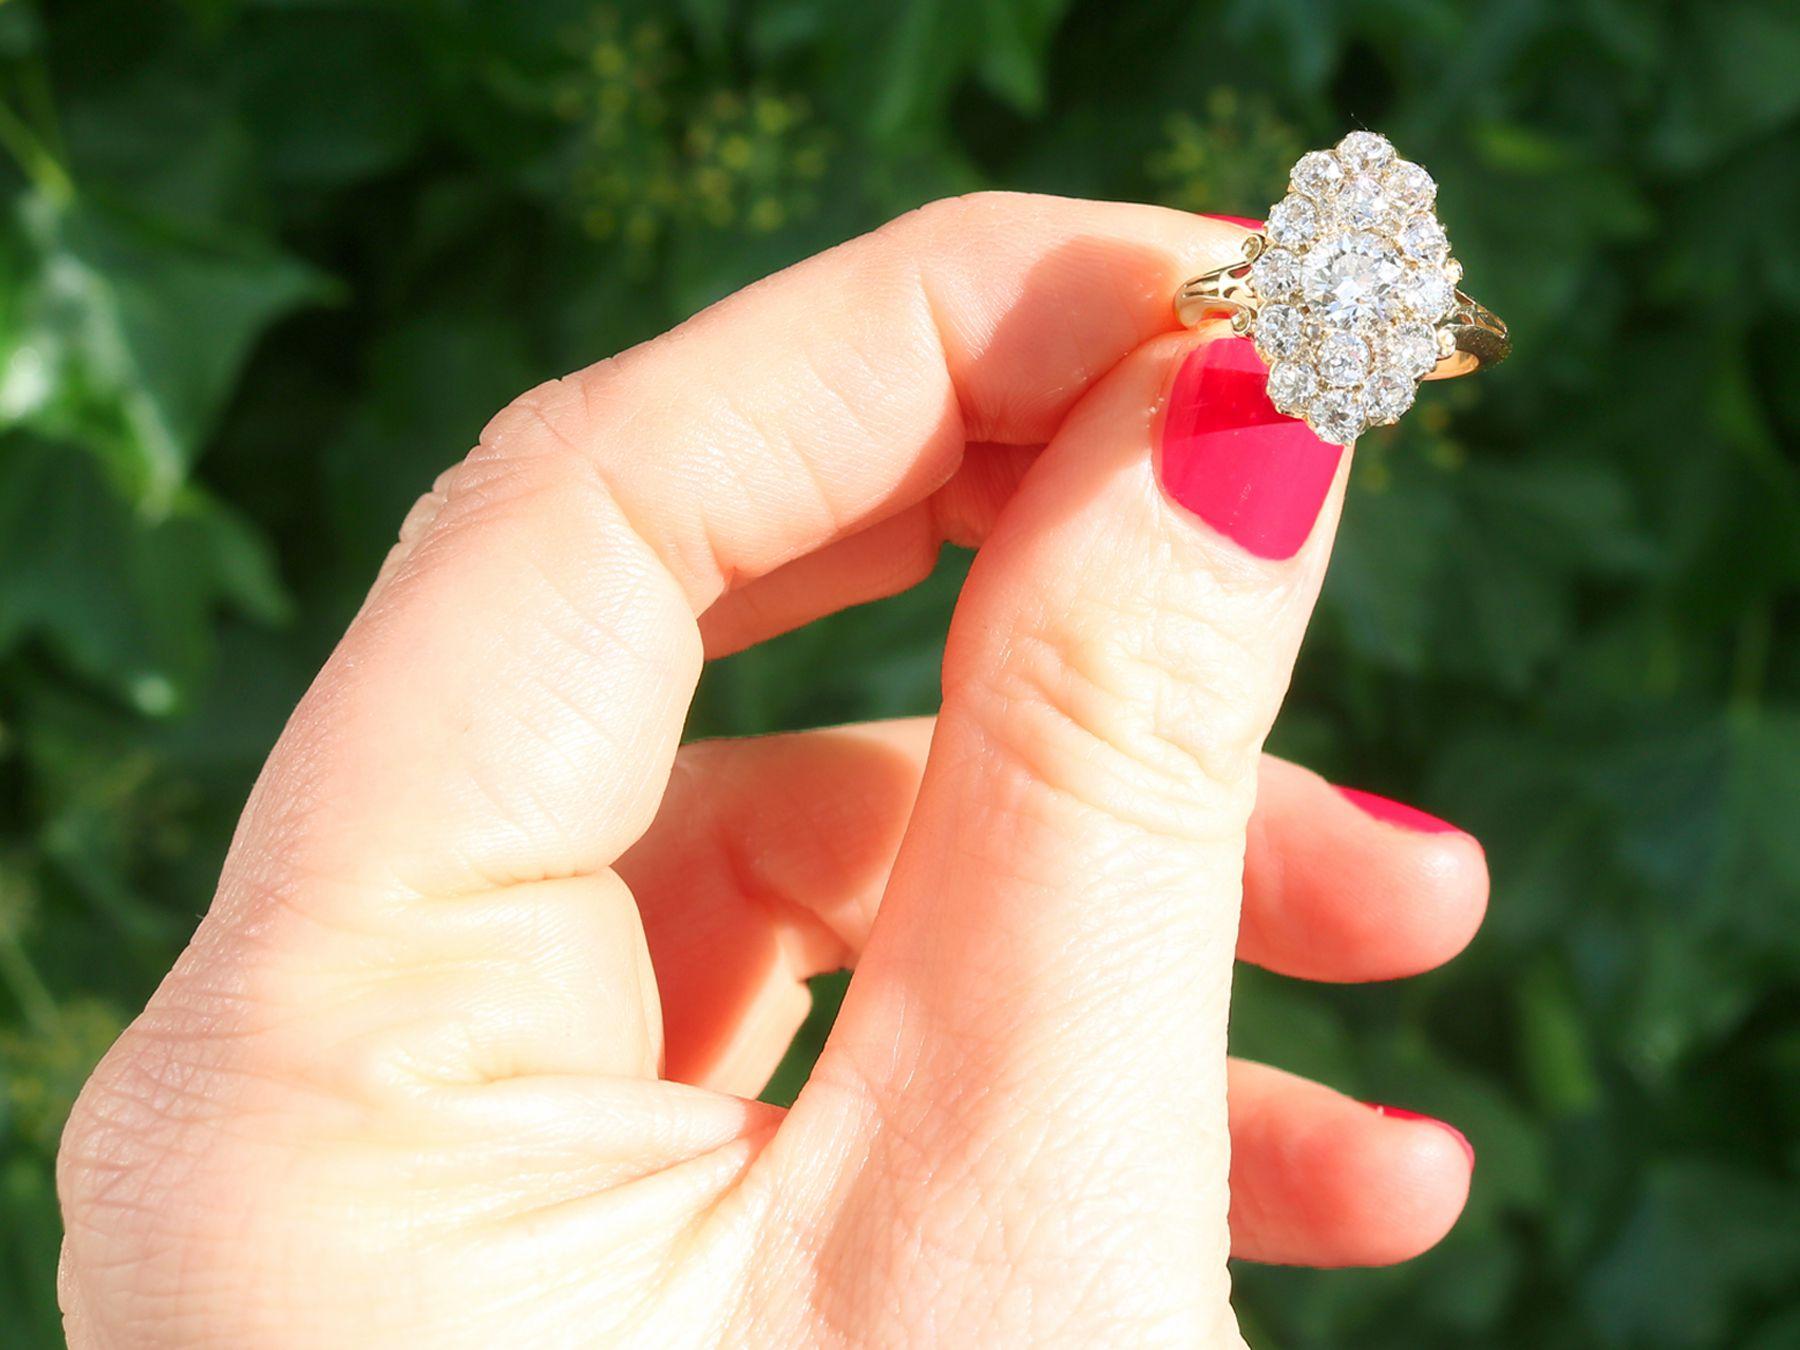 Eine atemberaubende, feine und beeindruckende antiken viktorianischen 2,35 Karat Diamant und 18 Karat Gelbgold Kleid Ring; Teil unserer vielfältigen antiken Schmuck und Estate Jewelry Sammlungen.

Dieser atemberaubende antike Ring ist aus 18 Karat